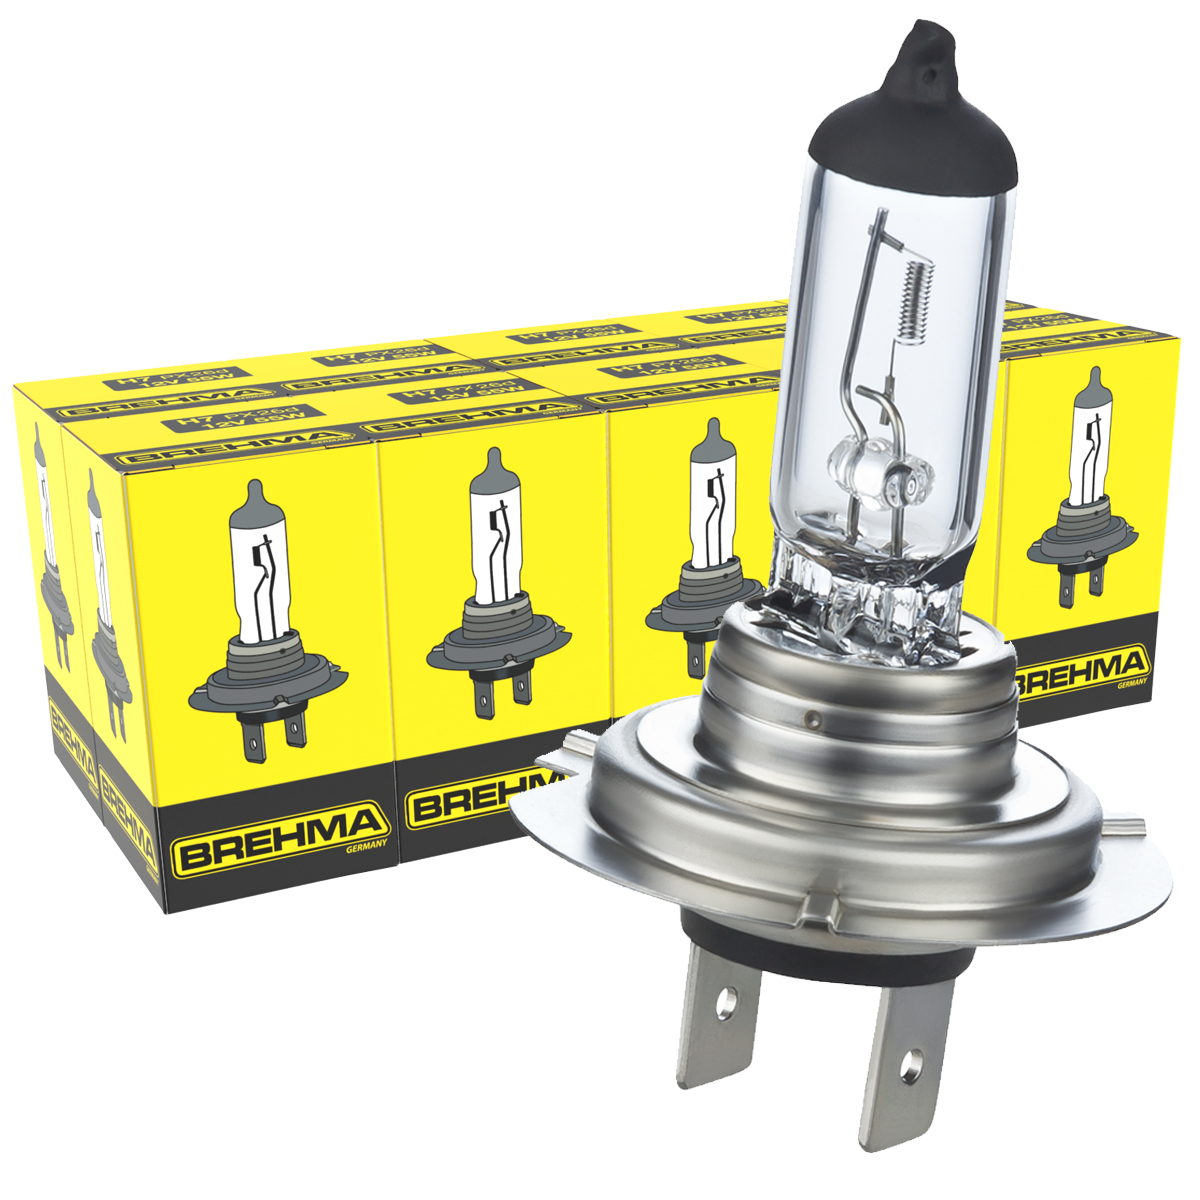 Auto-Lampen-Discount - H7 Lampen und mehr günstig kaufen - 10x BREHMA  Classic H7 12V 55W Lampe Halogen Standard